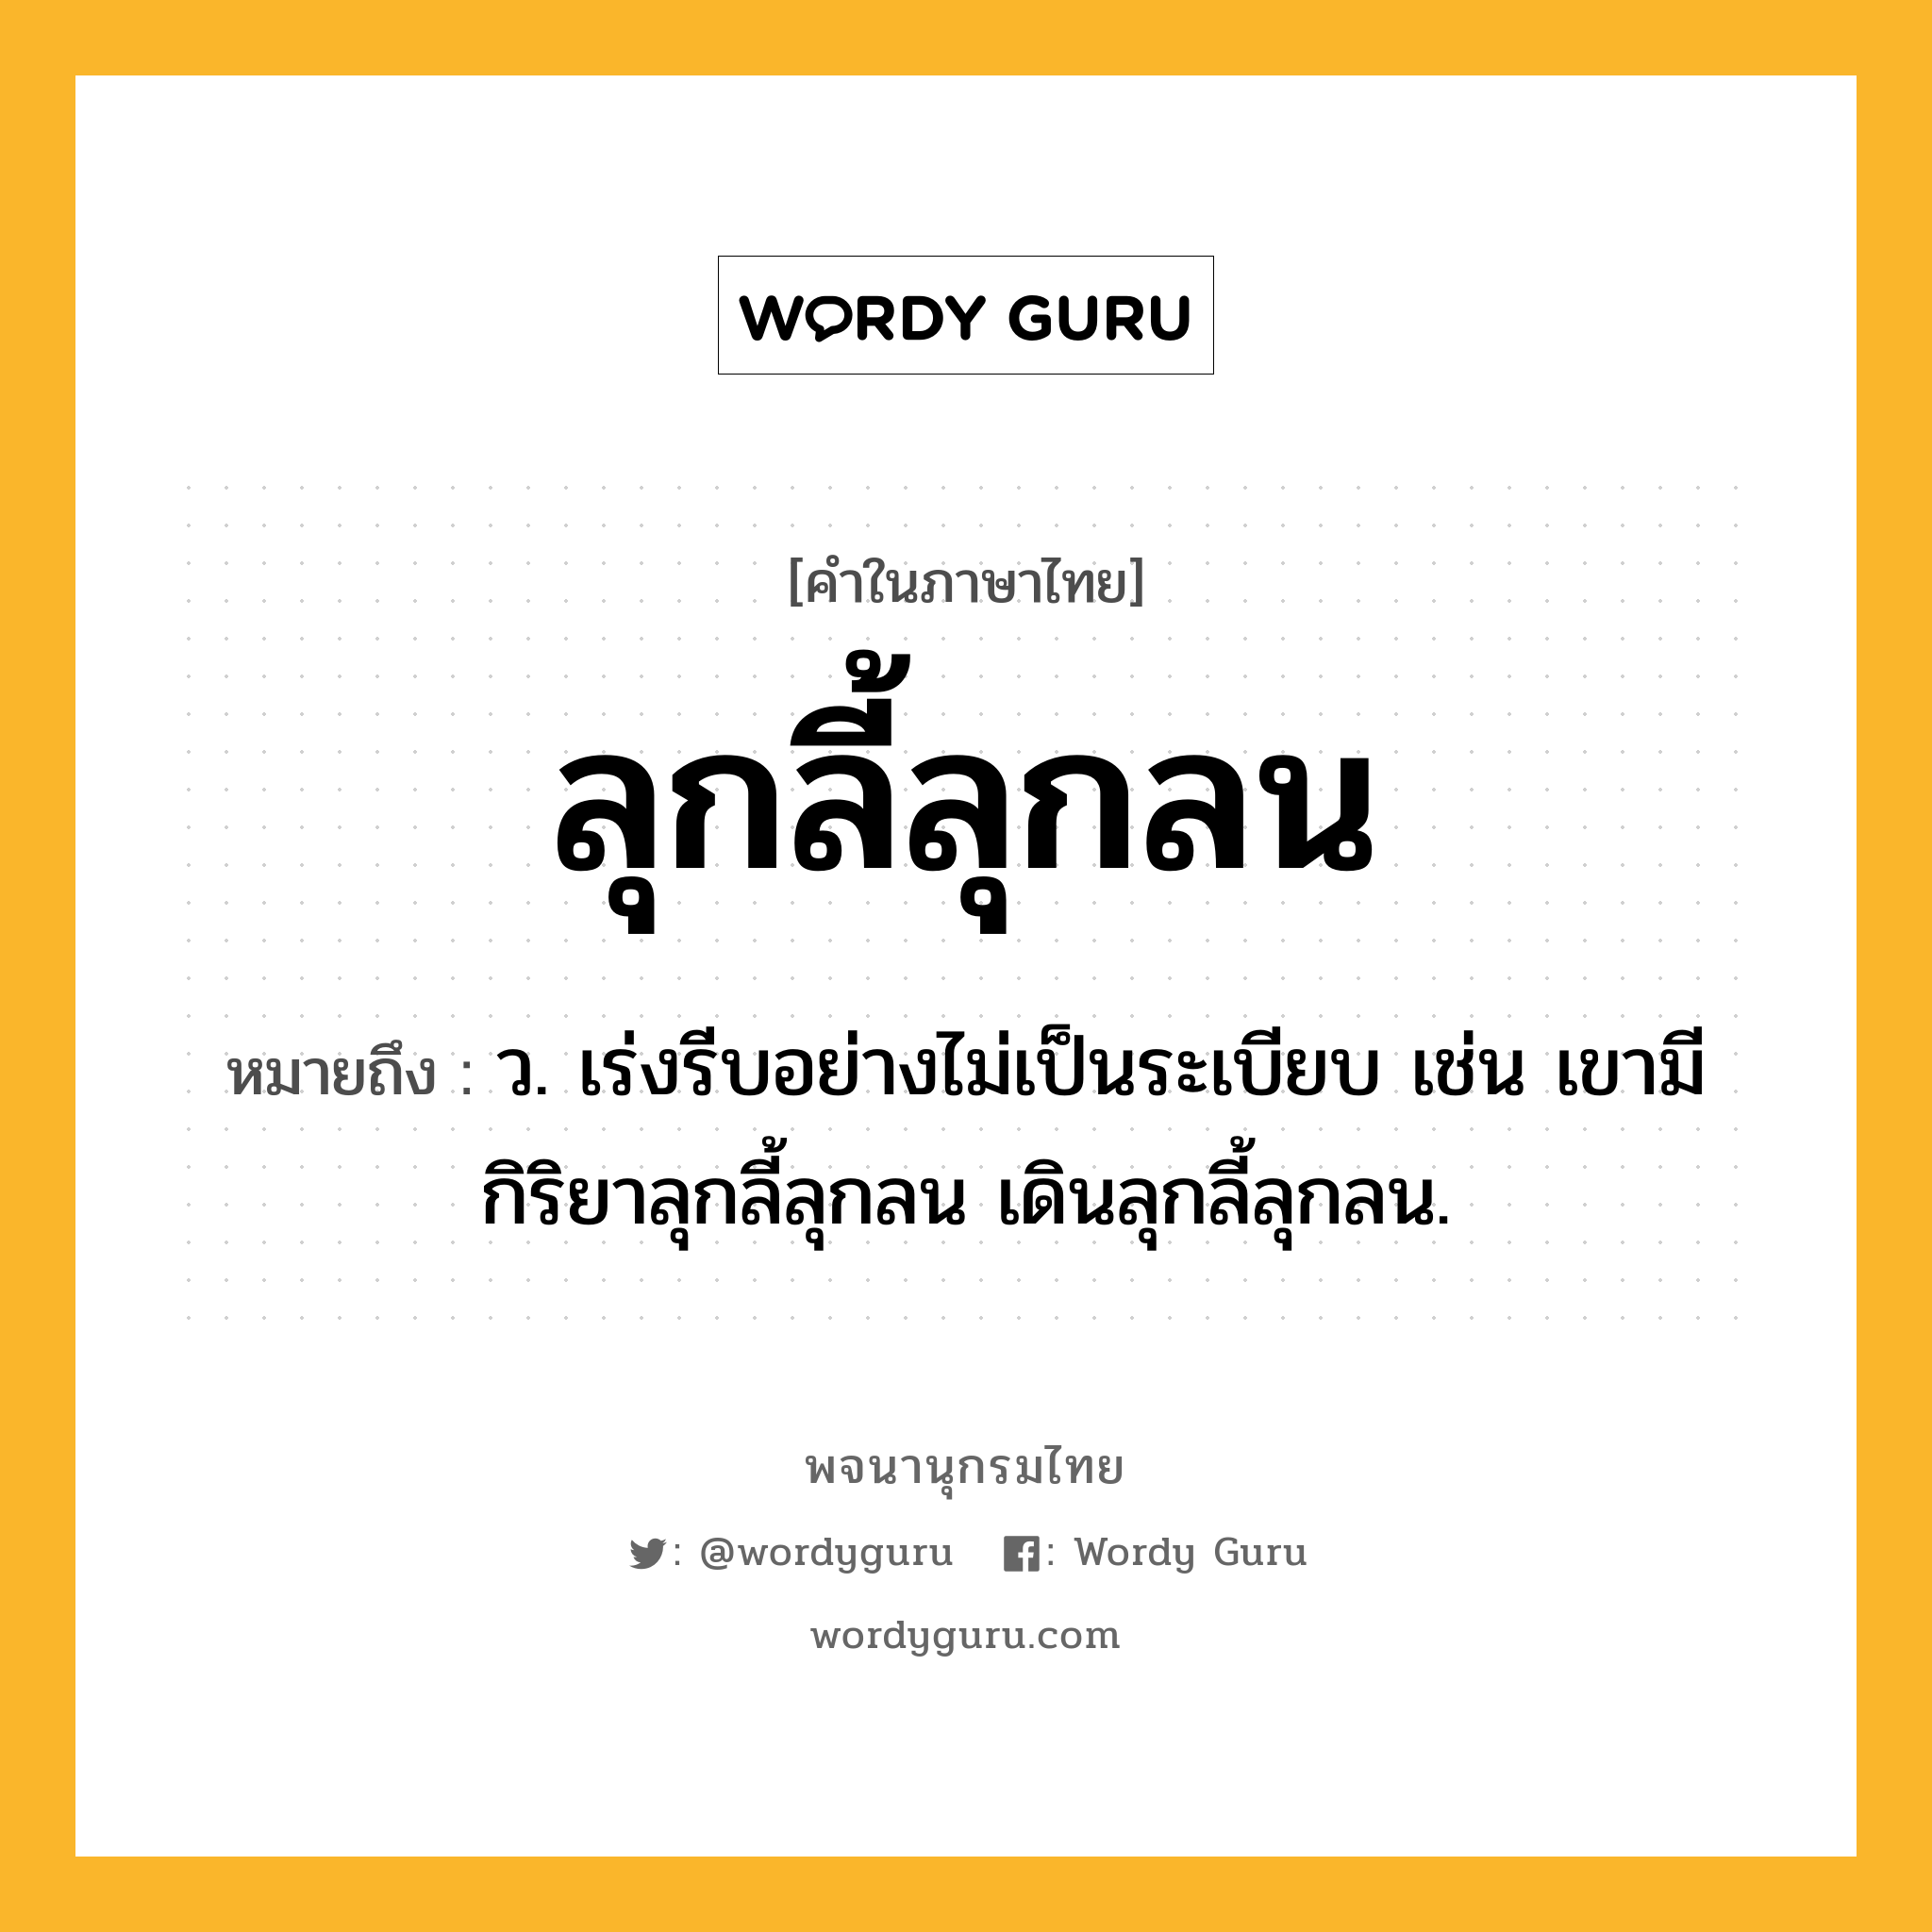 ลุกลี้ลุกลน หมายถึงอะไร?, คำในภาษาไทย ลุกลี้ลุกลน หมายถึง ว. เร่งรีบอย่างไม่เป็นระเบียบ เช่น เขามีกิริยาลุกลี้ลุกลน เดินลุกลี้ลุกลน.